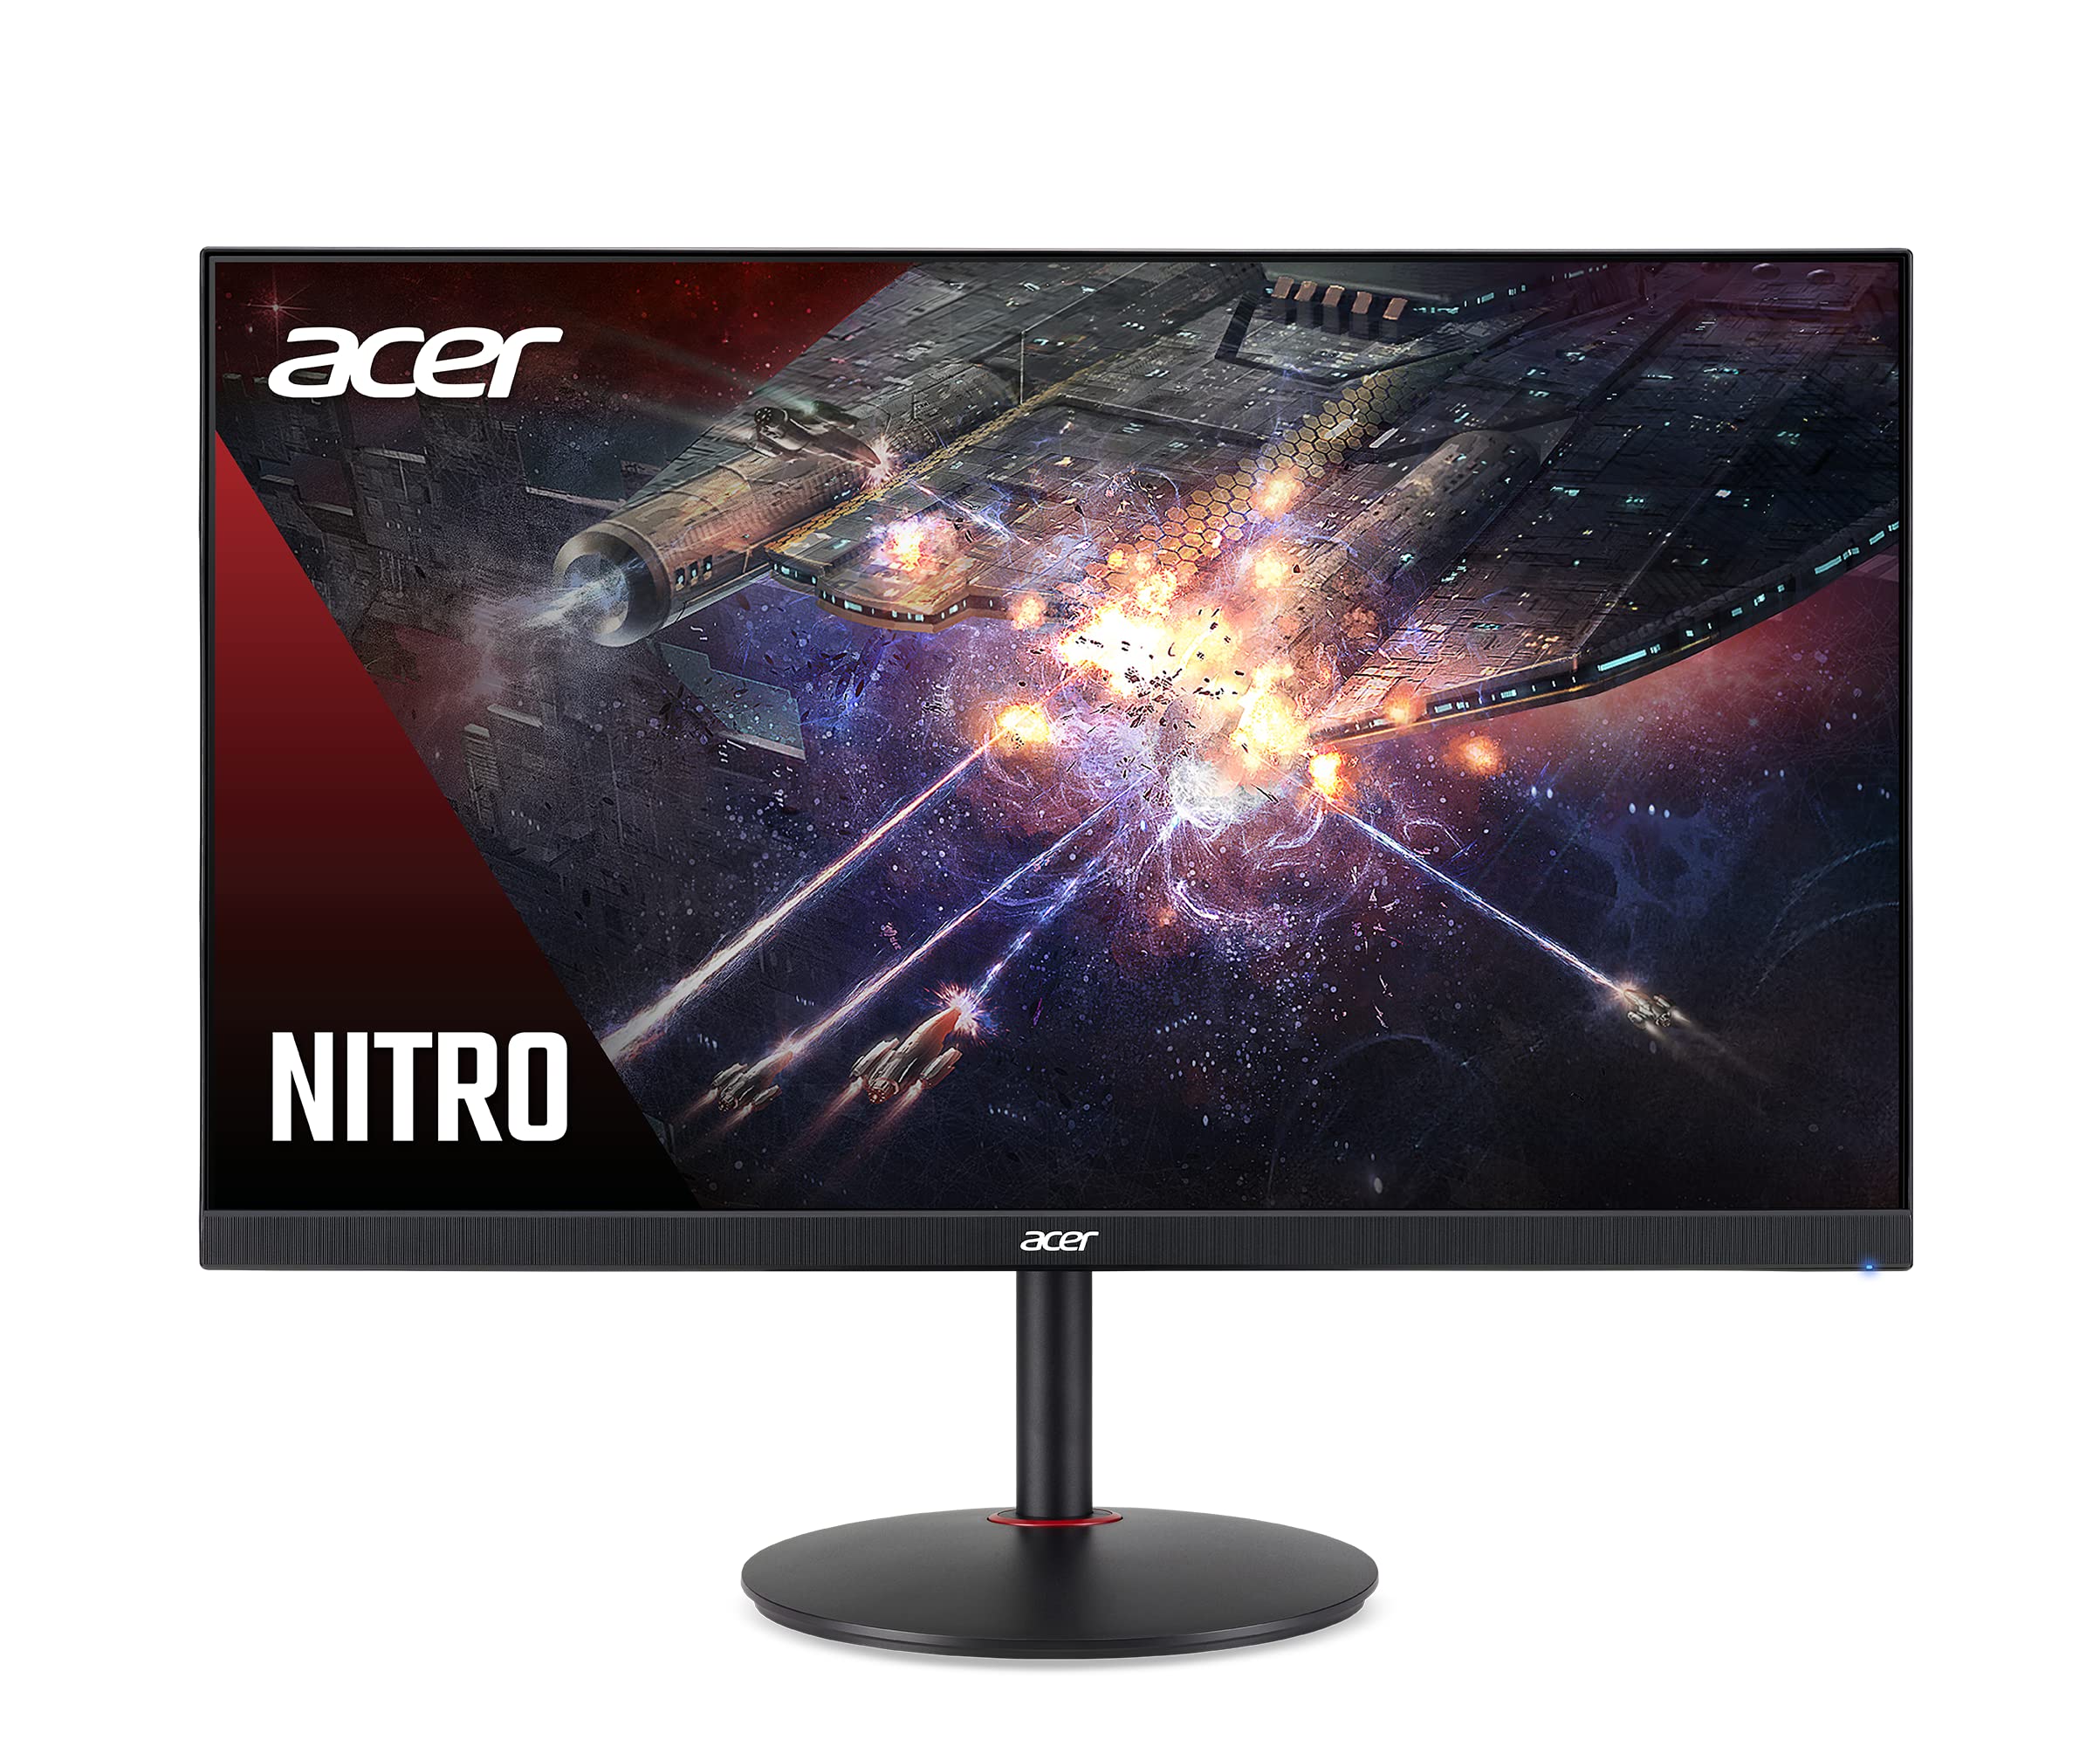  Acer شاشة Nitro XV272U Vbmiiprx 27 بوصة بدون إطار WQHD 2560 x 1440 للألعاب | AMD FreeSync Premium | Agile-Splendor IPS | فيركلوك إلى 170 هرتز | يصل إلى 0.5...